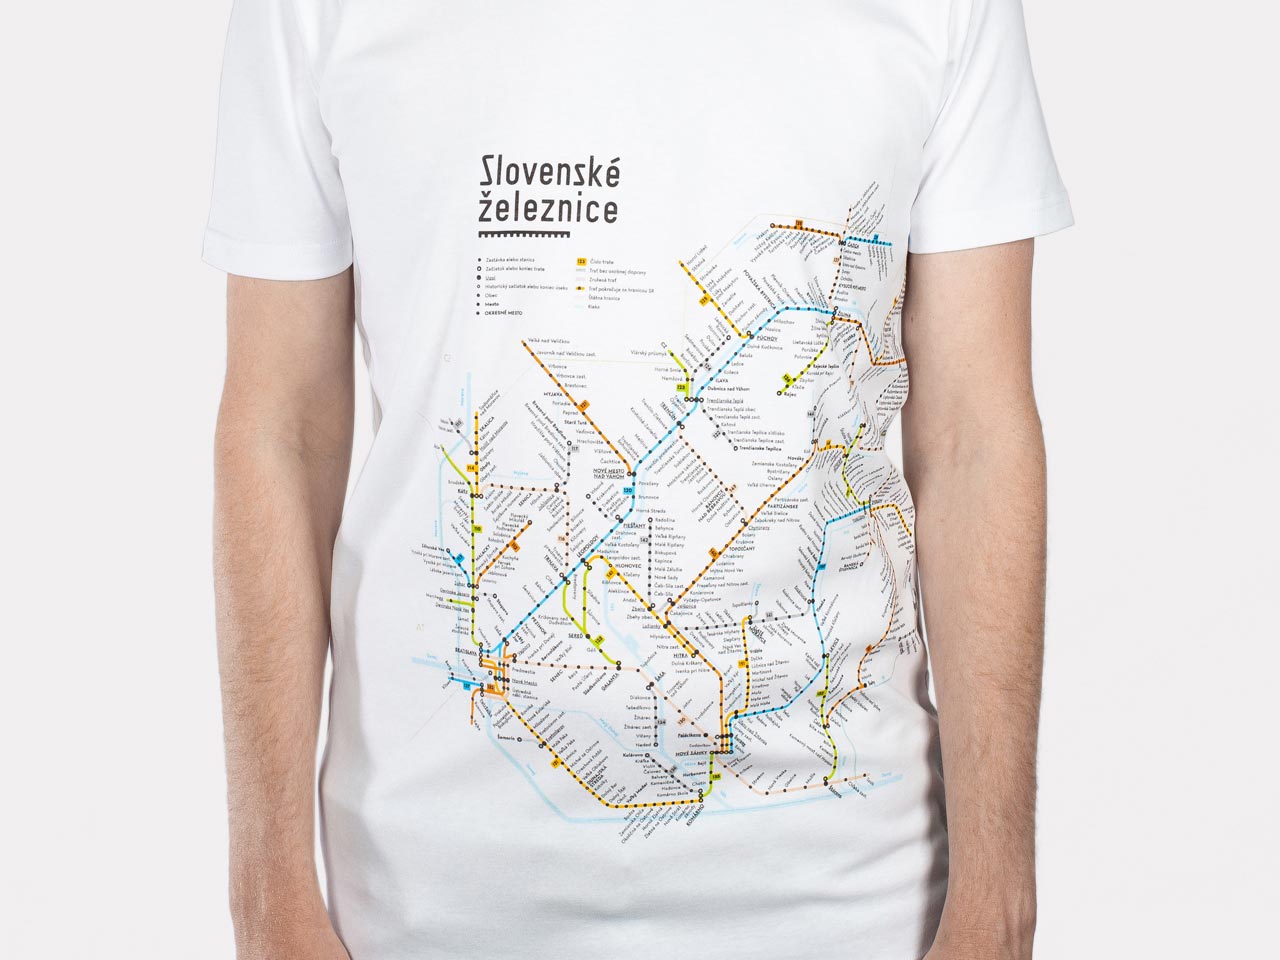 Print: Slovak Rail Map 2019